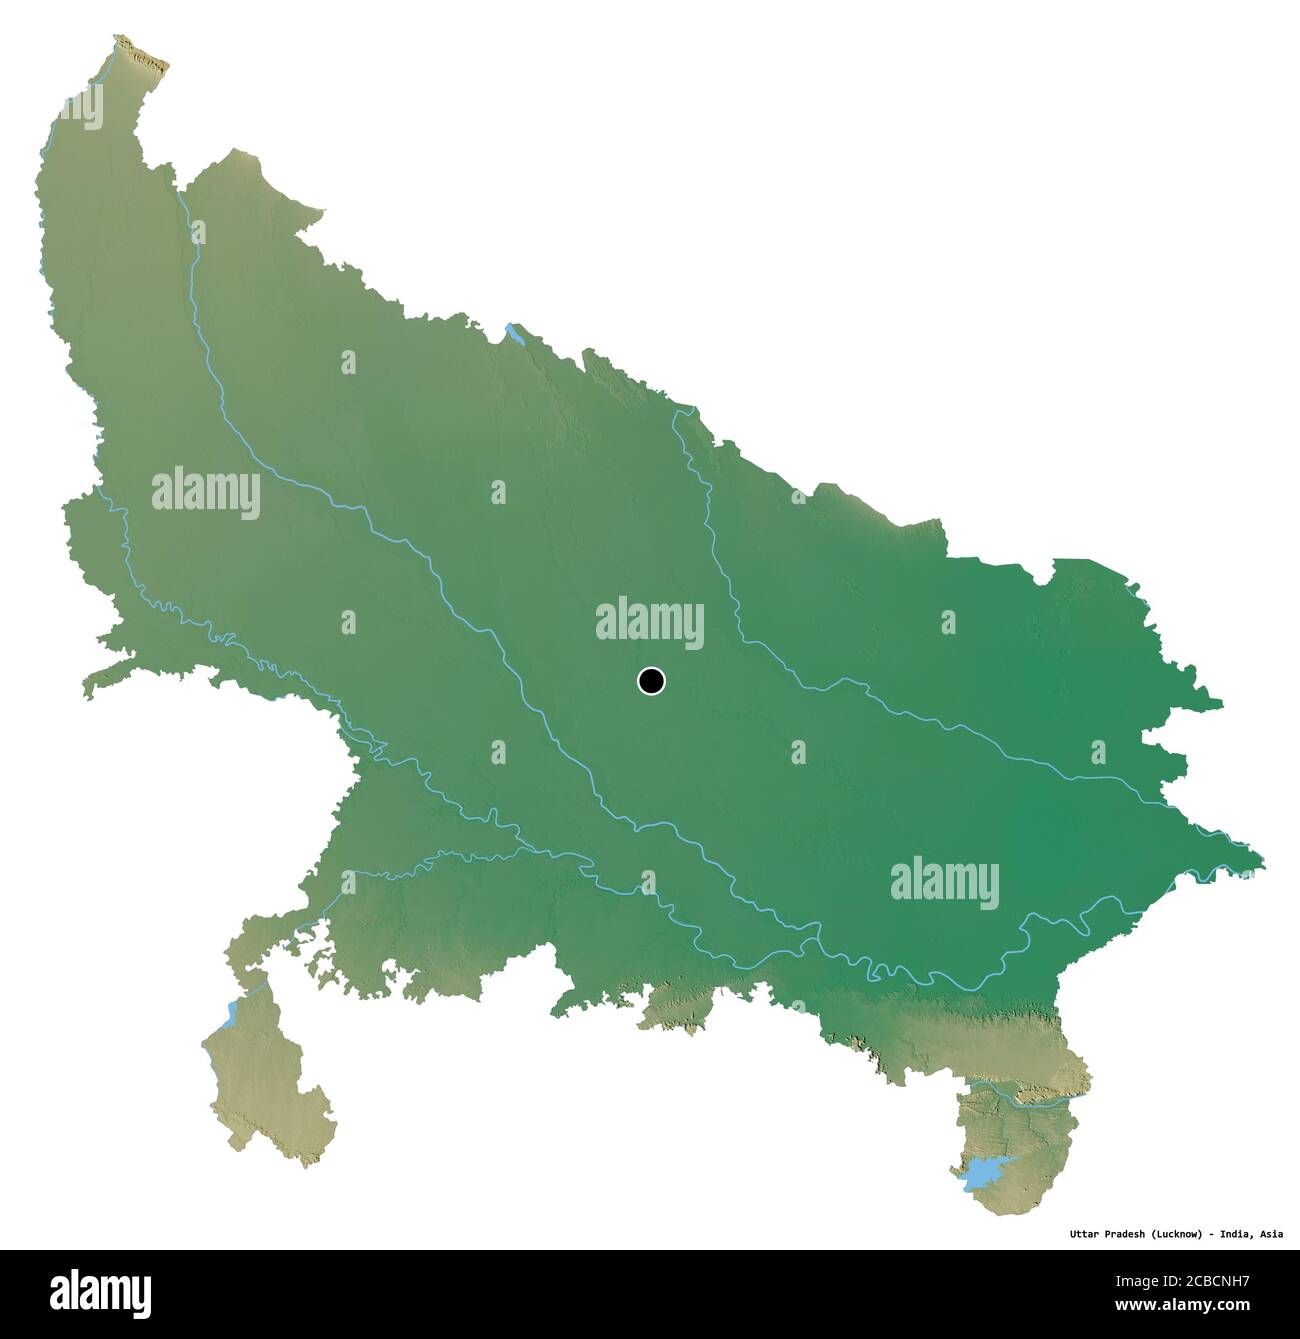 Forme de l'Uttar Pradesh, État de l'Inde, avec sa capitale isolée sur fond blanc. Carte topographique de relief. Rendu 3D Banque D'Images